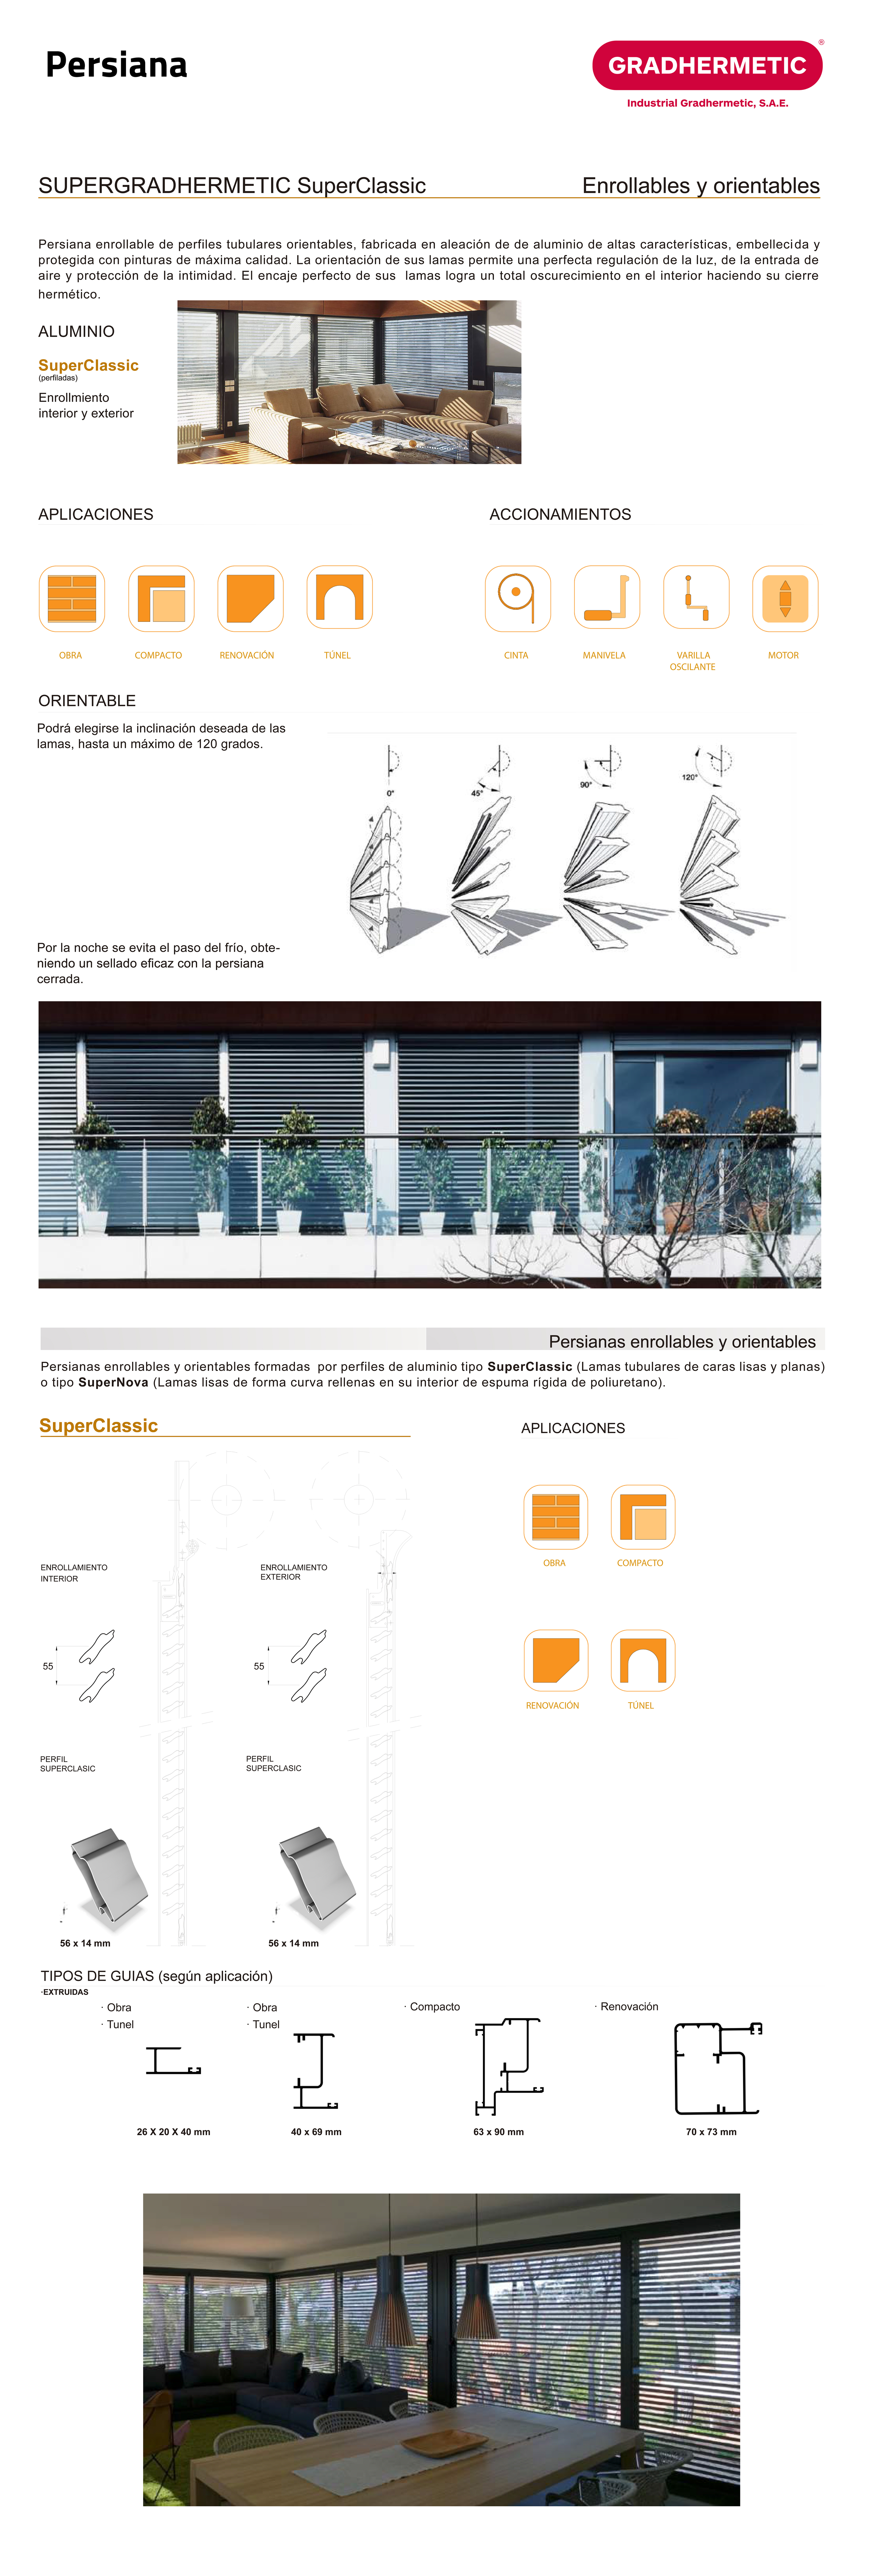 Grupo Valverde | Ventanas a la carta para profesionales, ventanas de aluminio